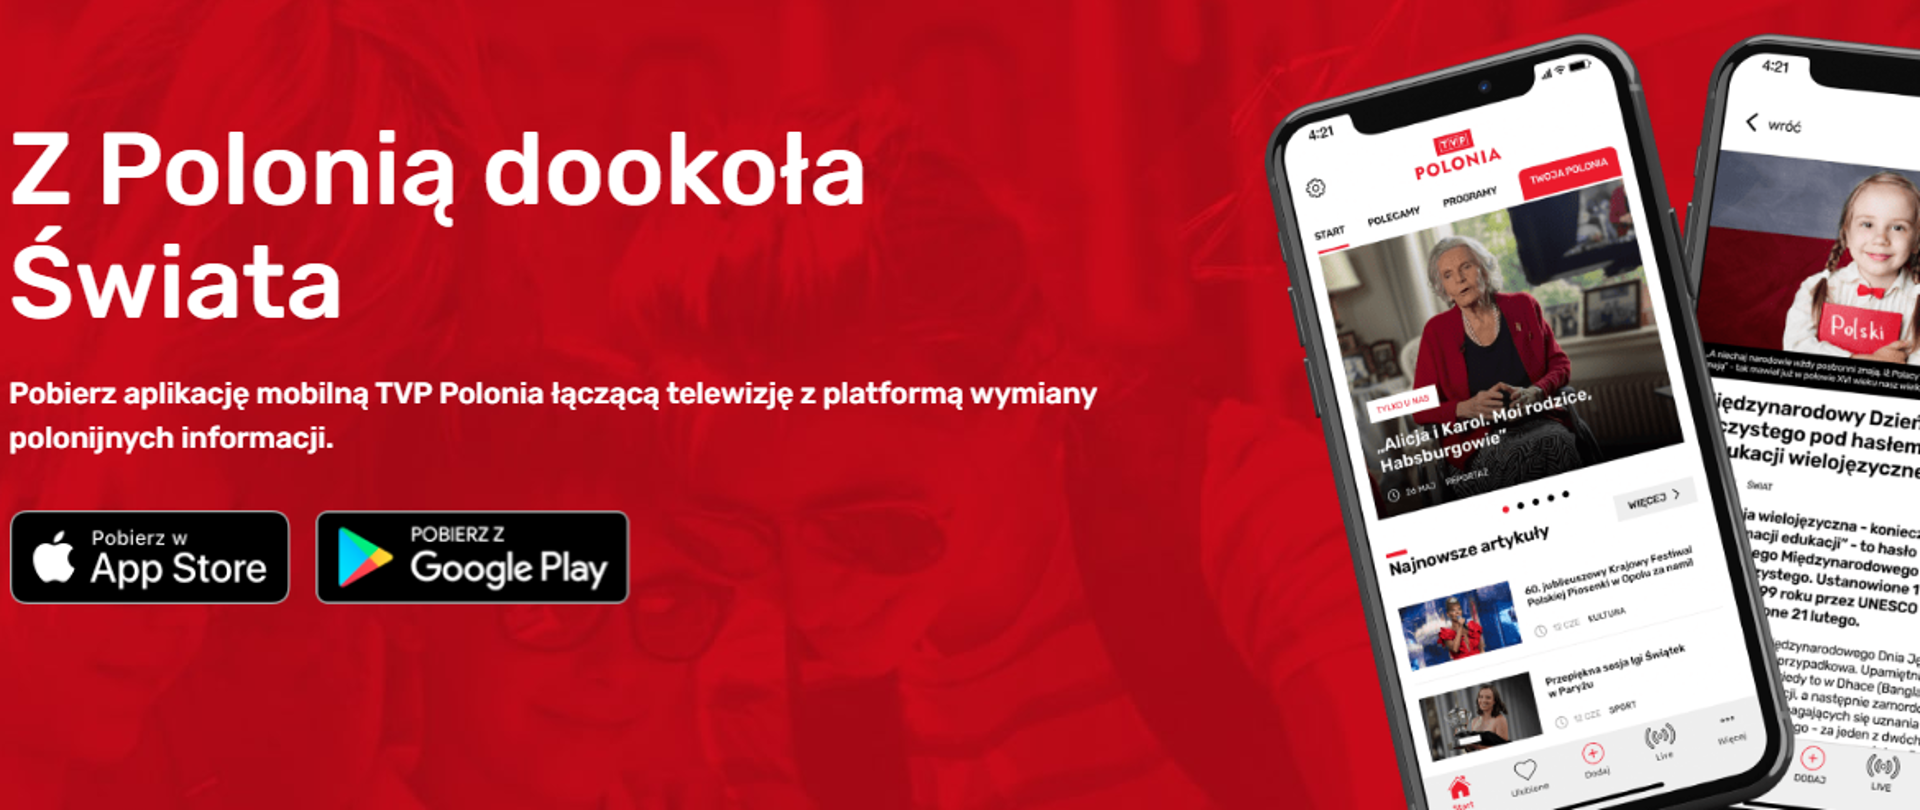 Aplikacja TVP Polonia pozwala bezpłatnie oglądać na telefonie unikatowe materiały polonijne z całego świata na żywo oraz wracać do programów już wyemitowanych – nawet do 7 dni wstecz!